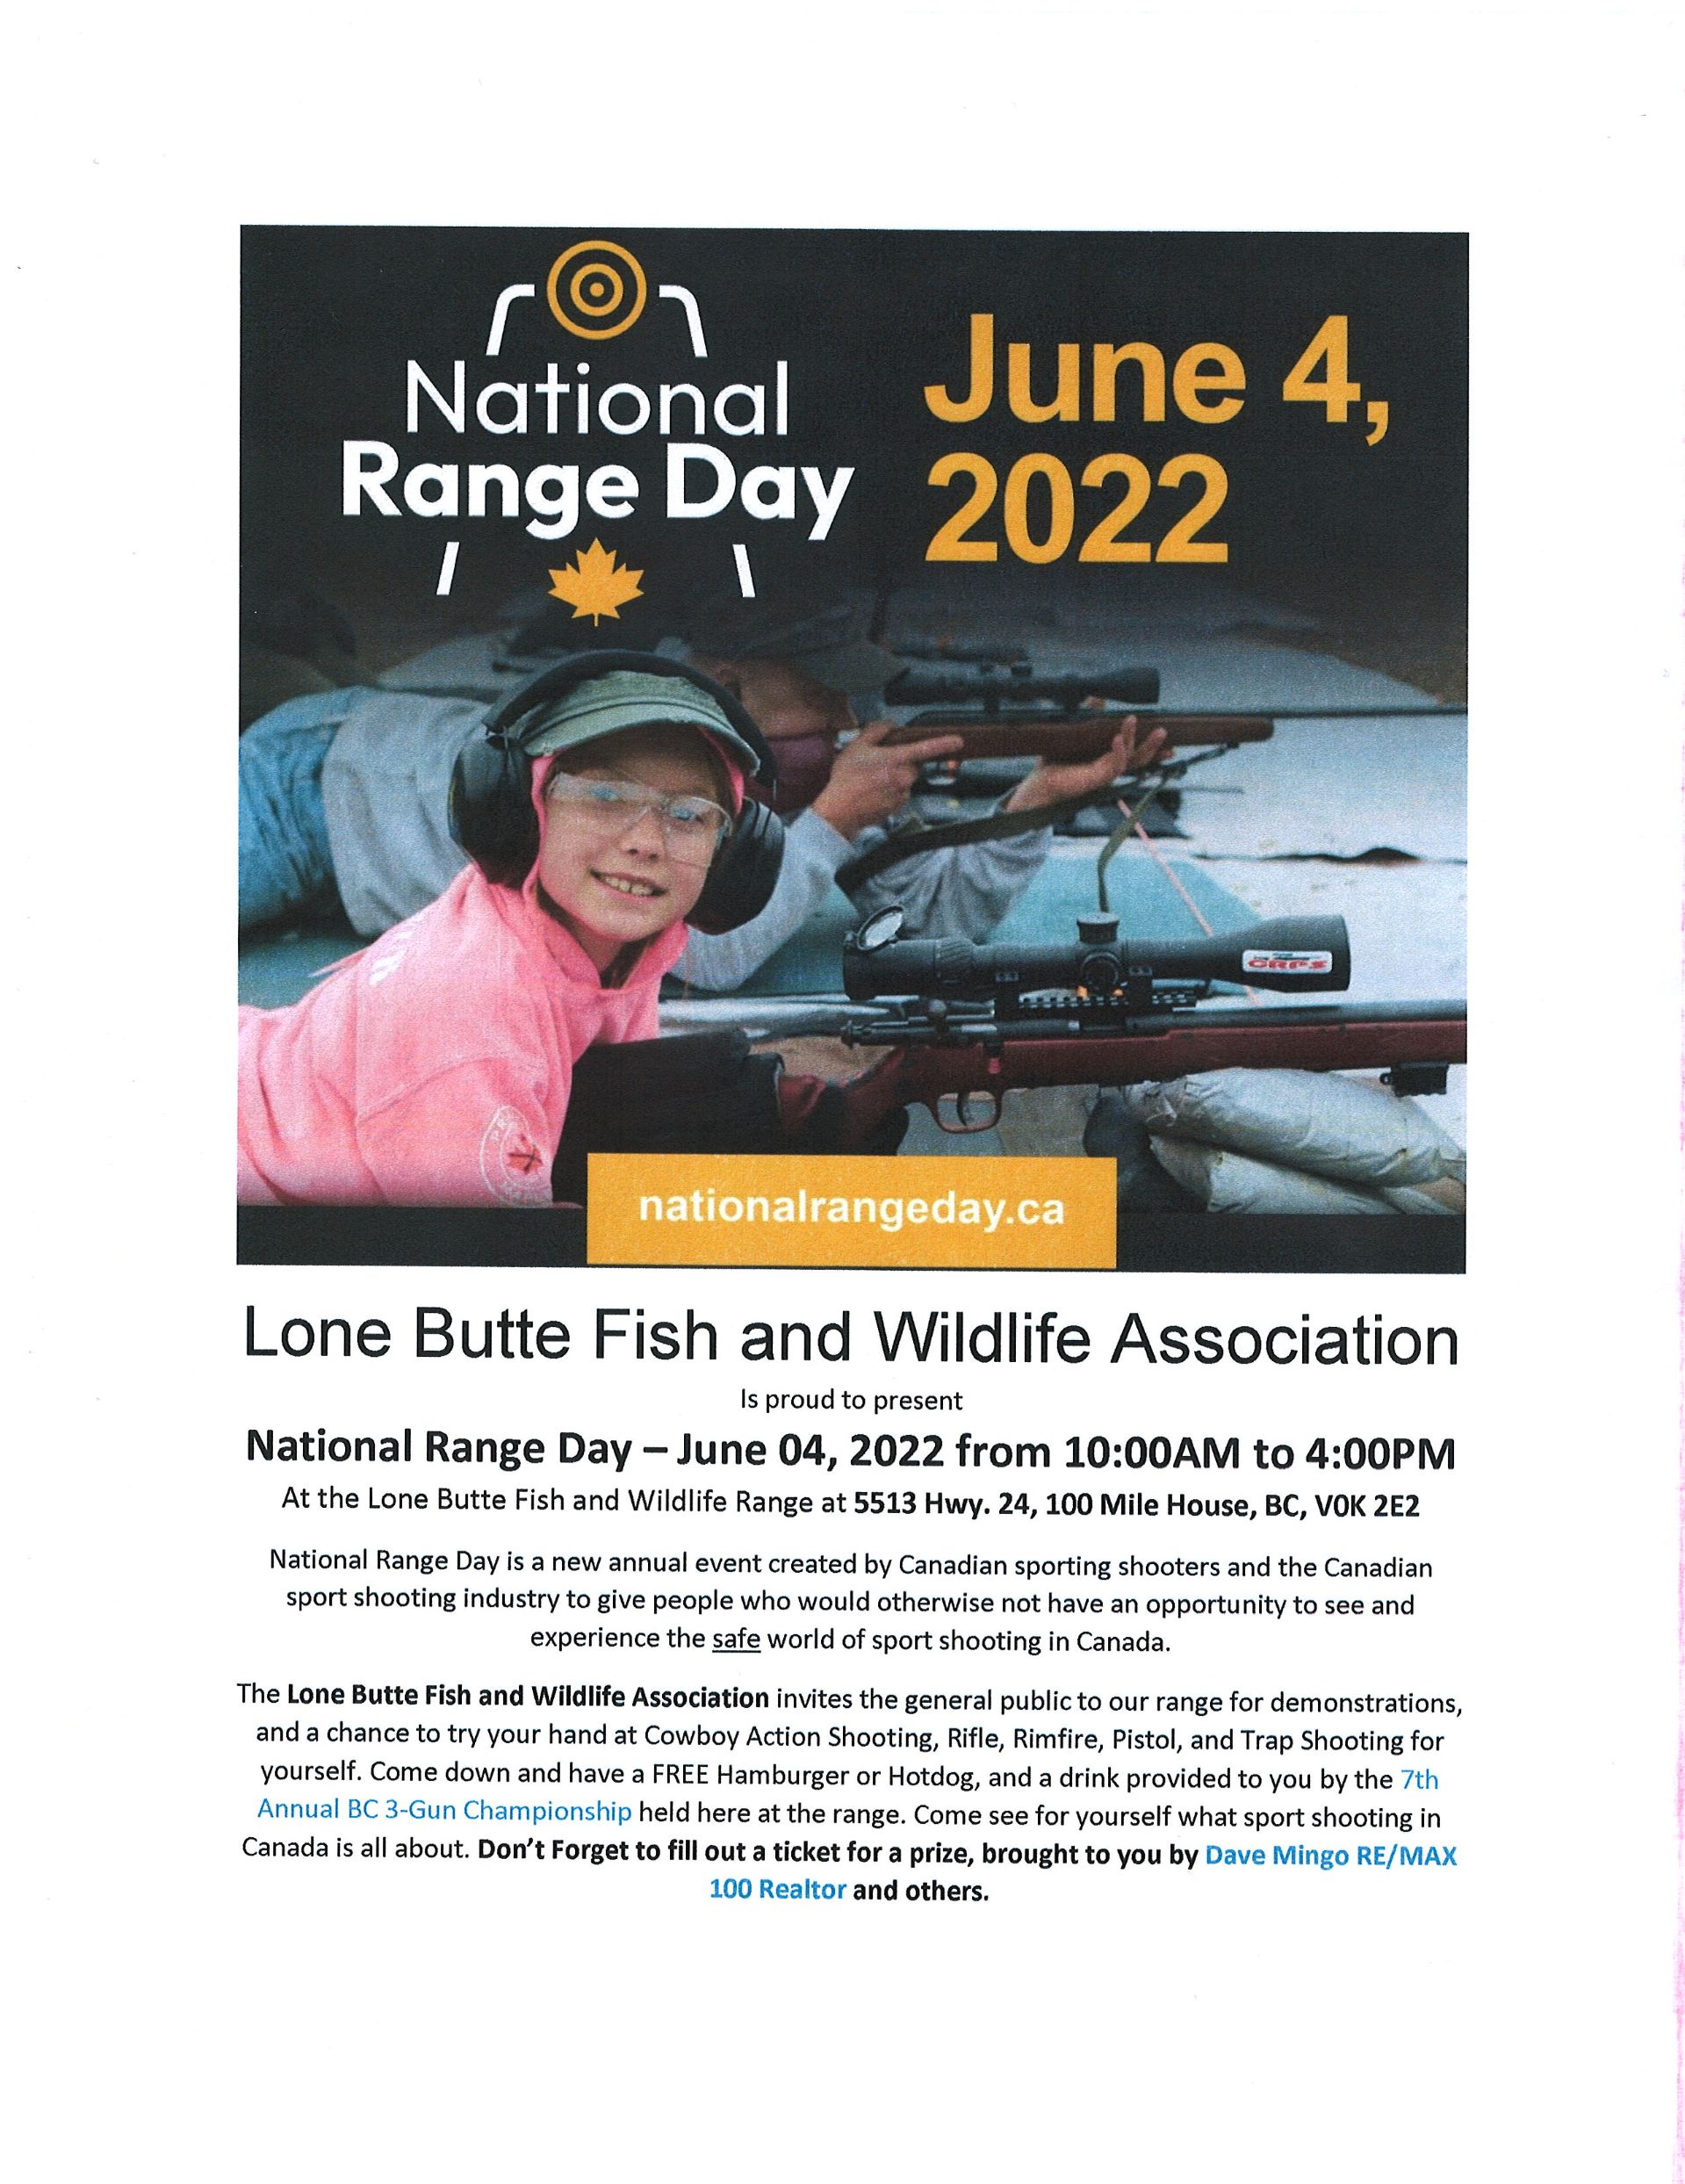 National Range Day Poster 2022.JPG